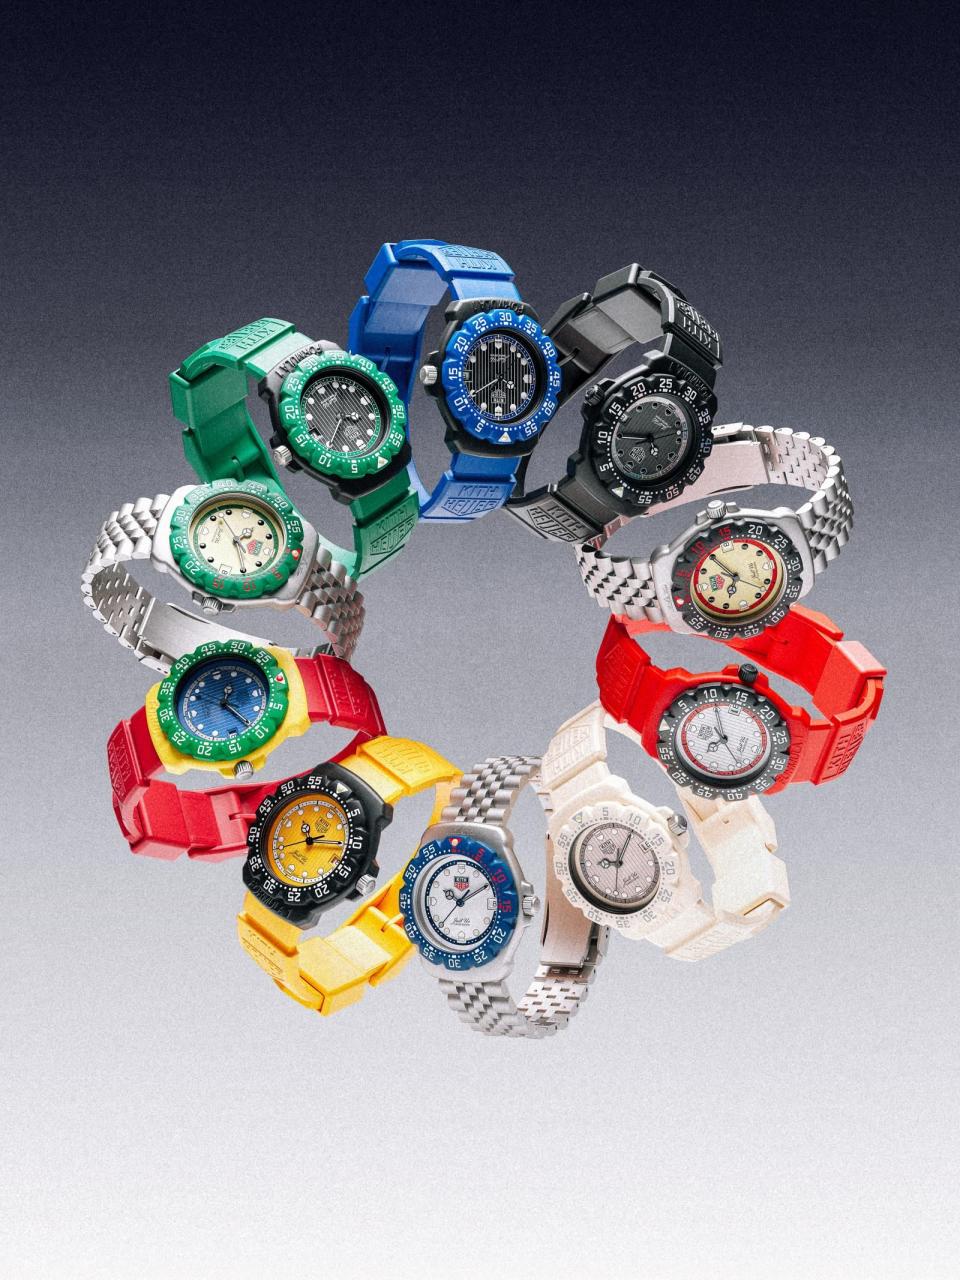 泰格豪雅推出1986年原版TAG Heuer Formula 1（F1）Series 1腕錶的復刻版本，並且還與當紅紐約潮店KITH合作，在logo上把TAG換成KITH。錶徑35mm，搭載石英機芯，定價約NT$50,500。